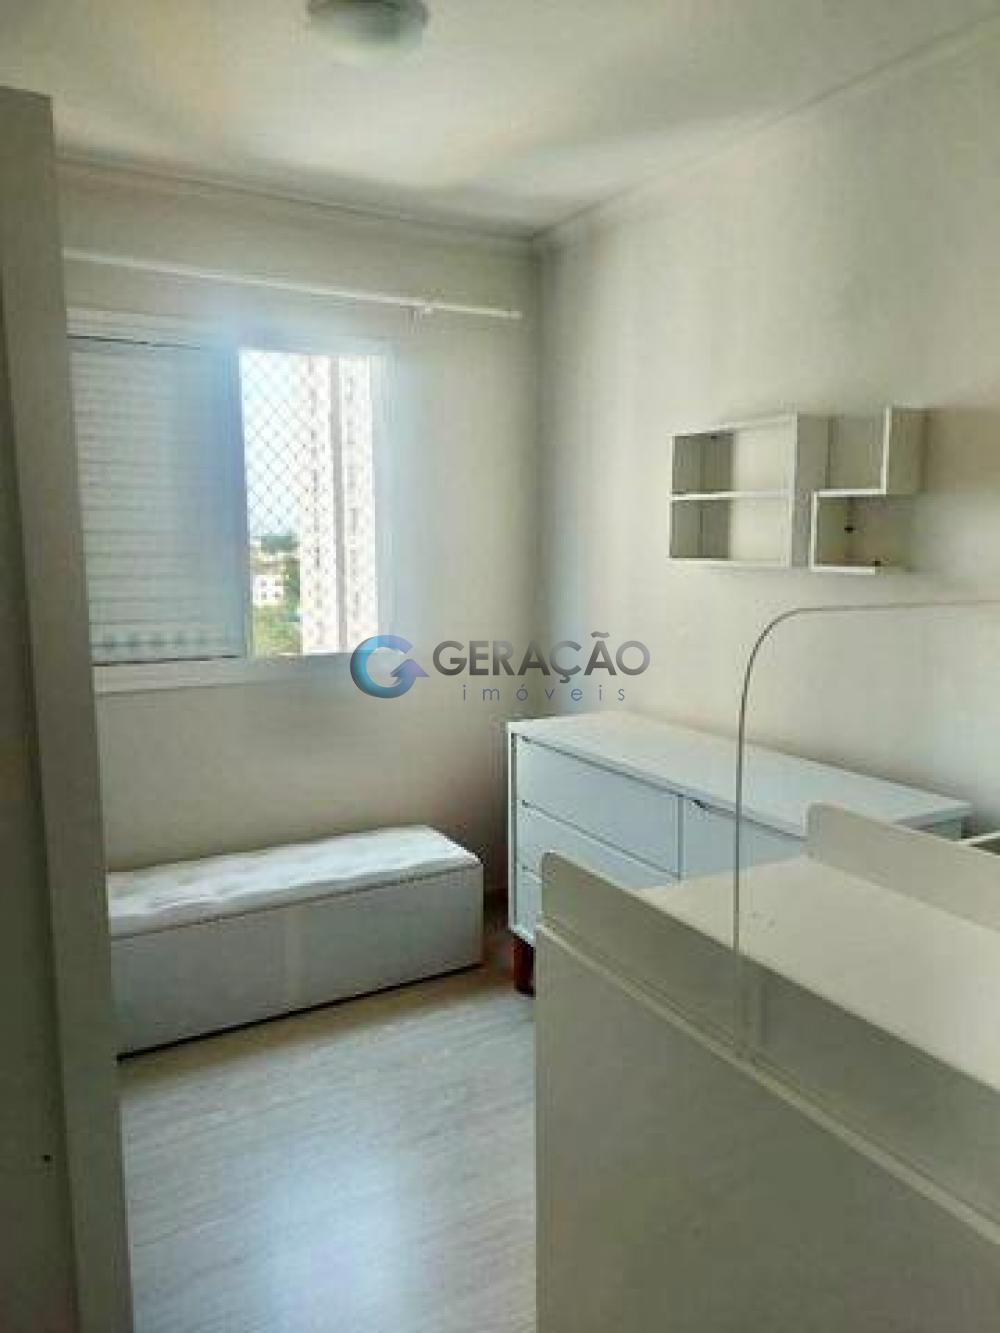 Comprar Apartamento / Padrão em São José dos Campos R$ 240.000,00 - Foto 14